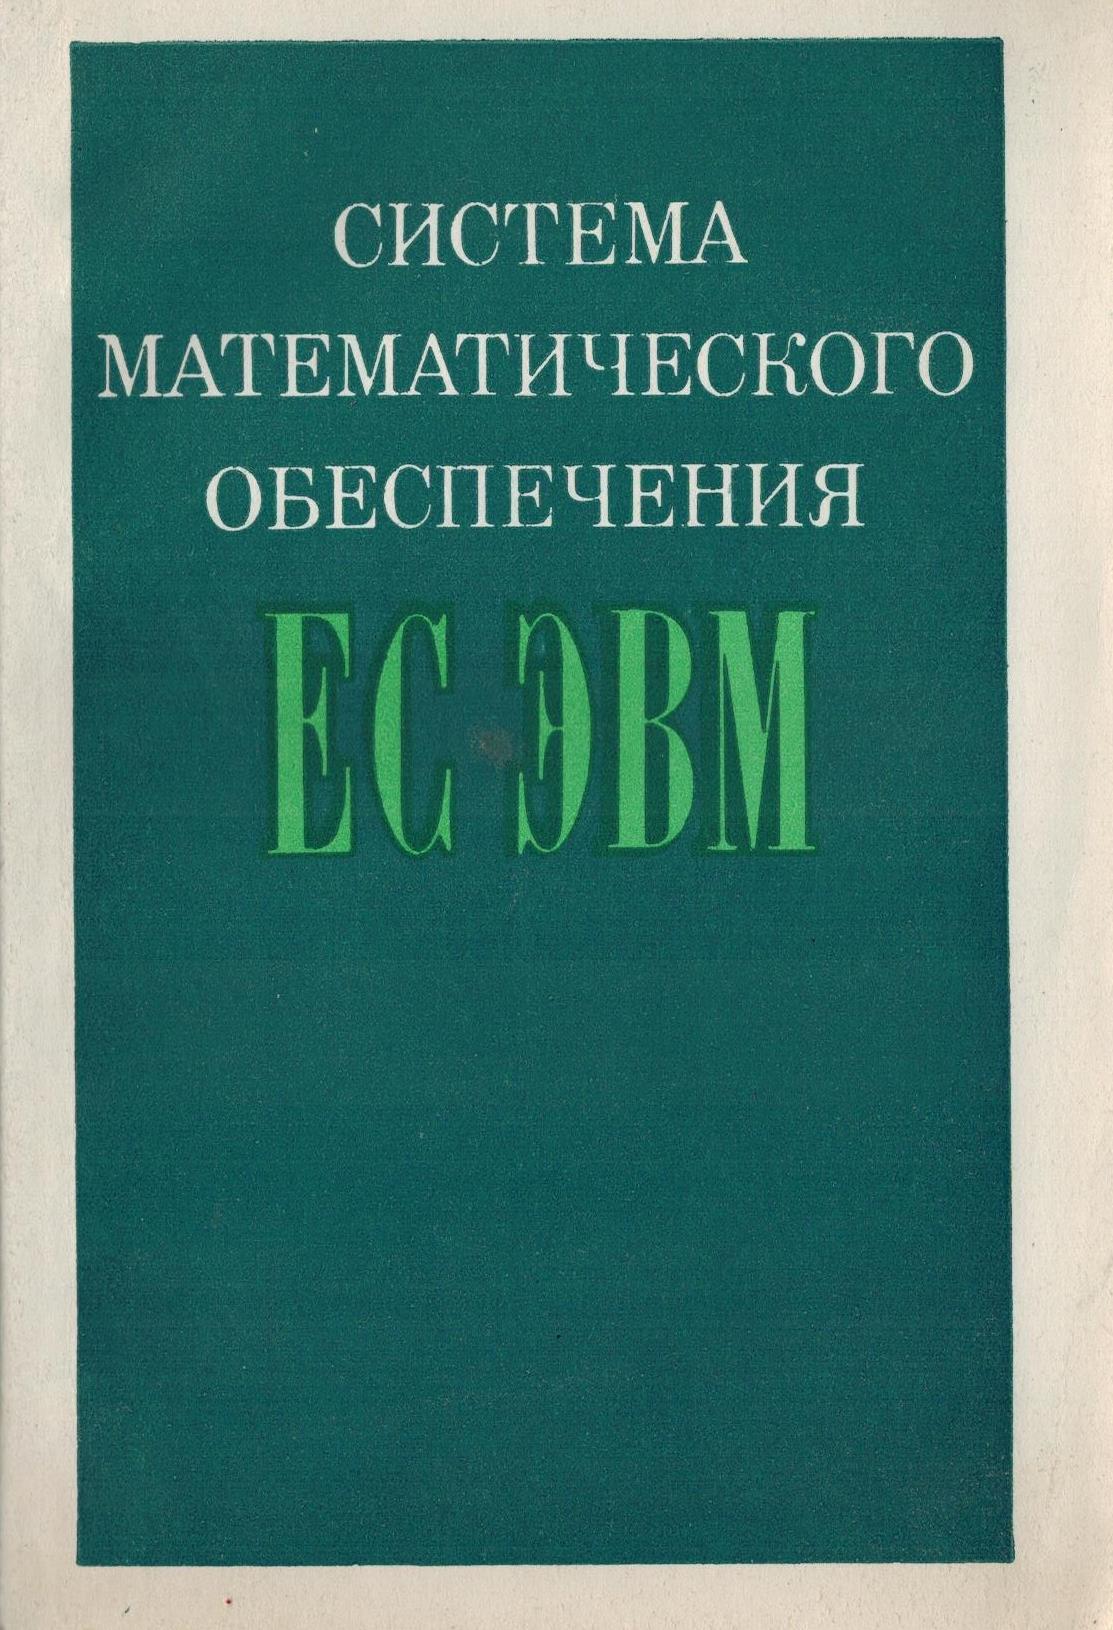 Книга система. "Математическое обеспечение ЕС ЭВМ". Компьютерные математические системы книга. Эвм книга